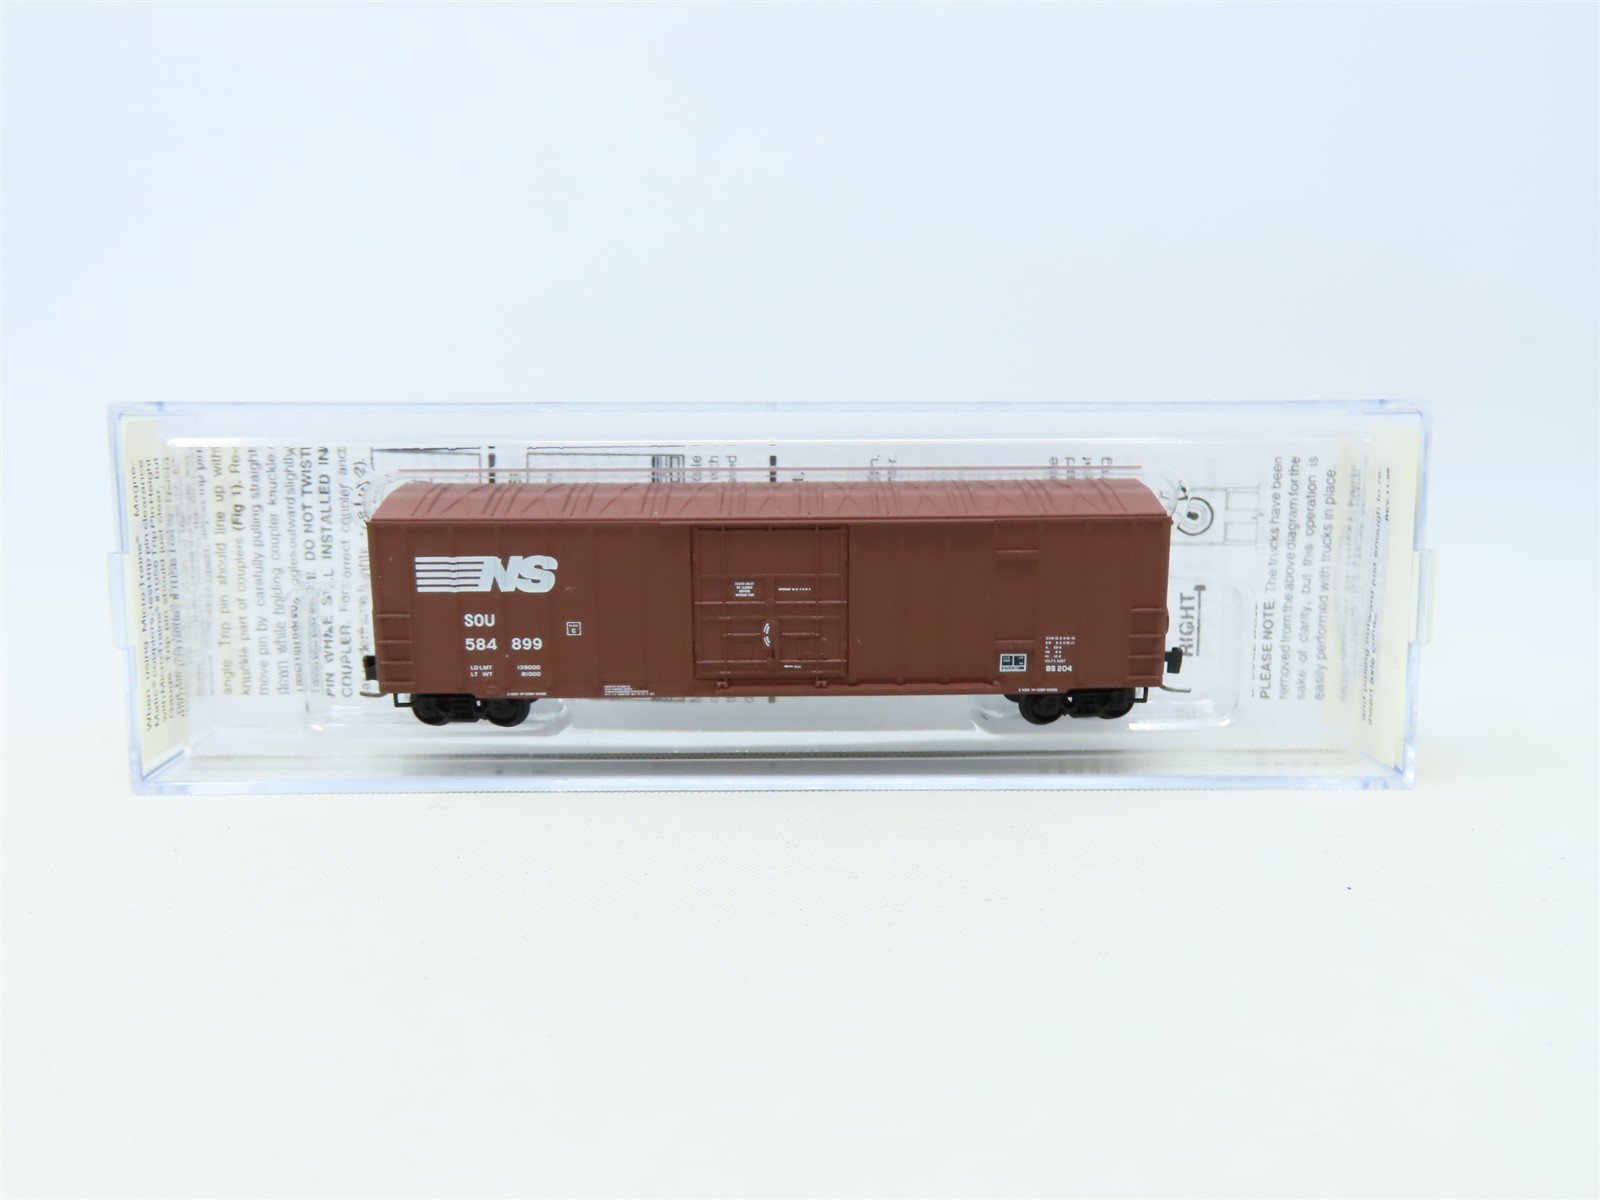 Z Scale Micro-Trains MTL 511 00 040 NS SOU Norfolk Southern 50' Box Car #584899